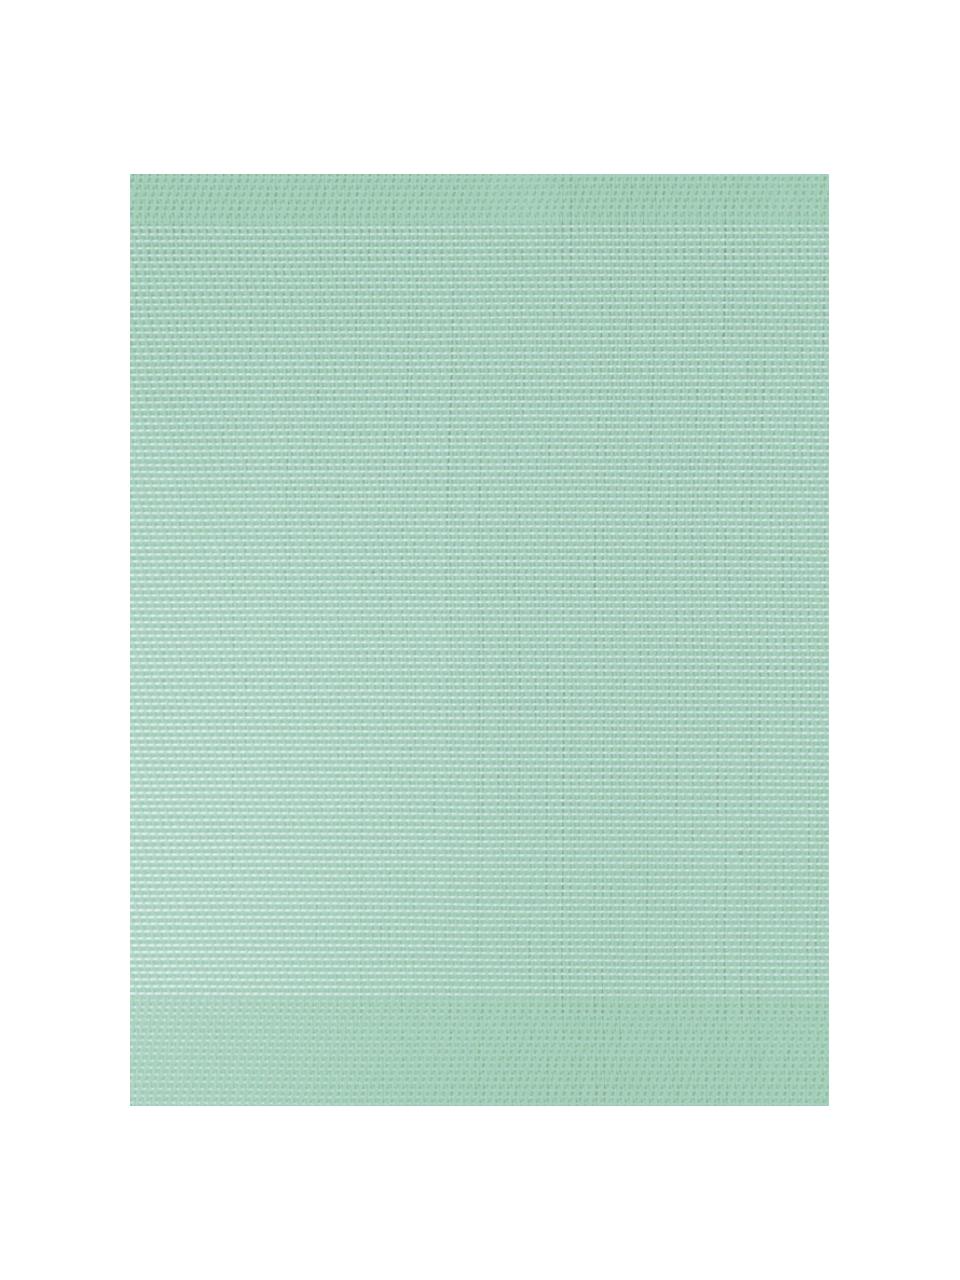 Podkładka  ze sztucznej skóry Trefl, 2 szt., Tworzywo sztuczne (PVC), Zielony miętowy, S 33 x D 46 cm